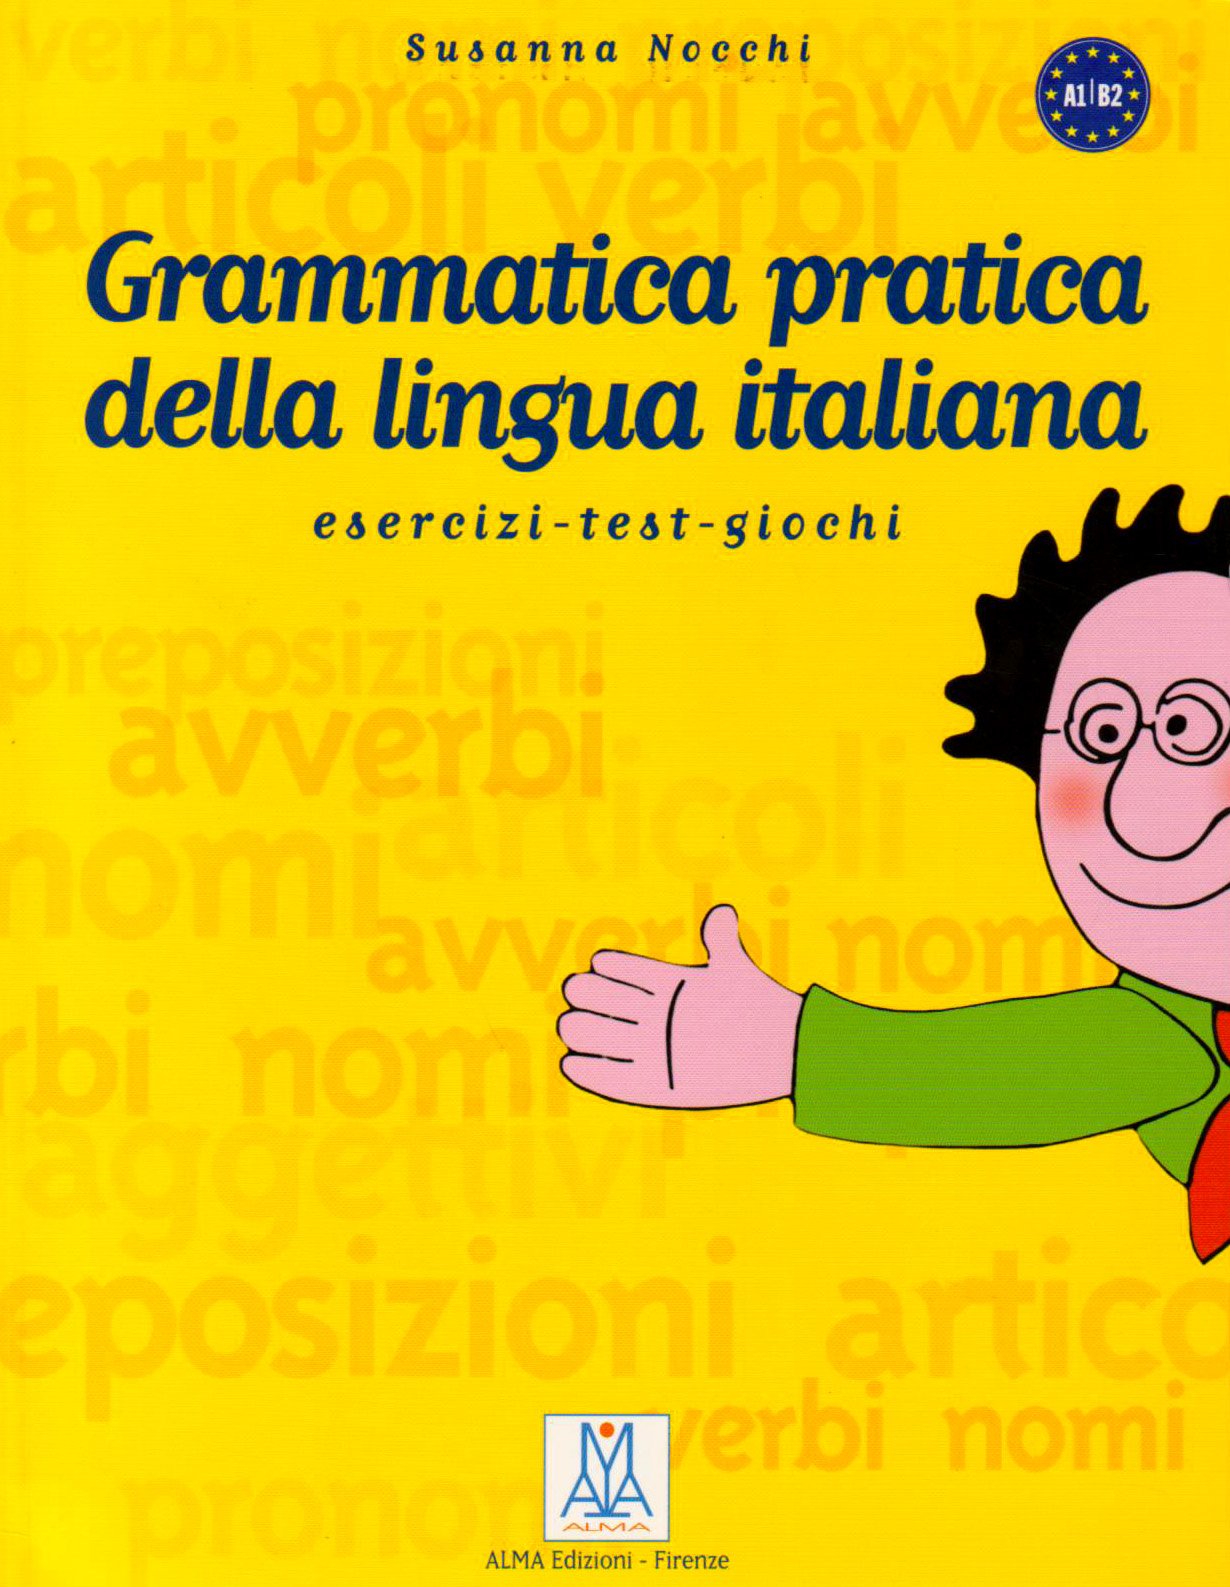 Grammatica pratica della lingua italiana. Esercizi test giochi A1-B2